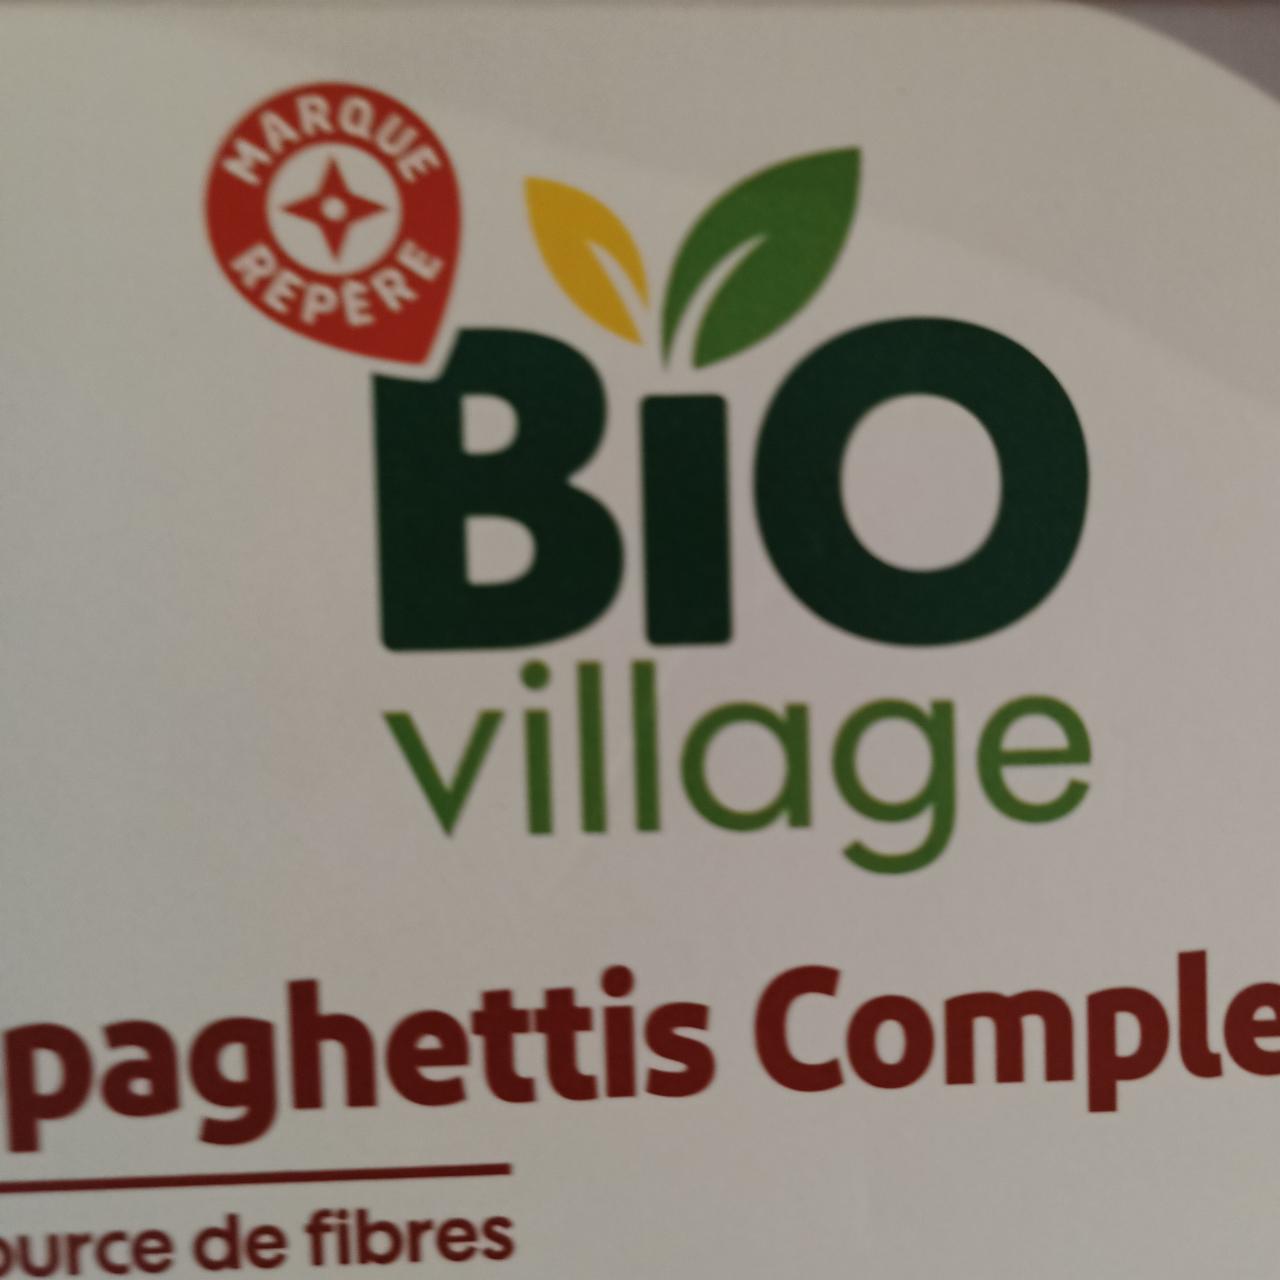 Fotografie - Spaghettis complets Bio Village